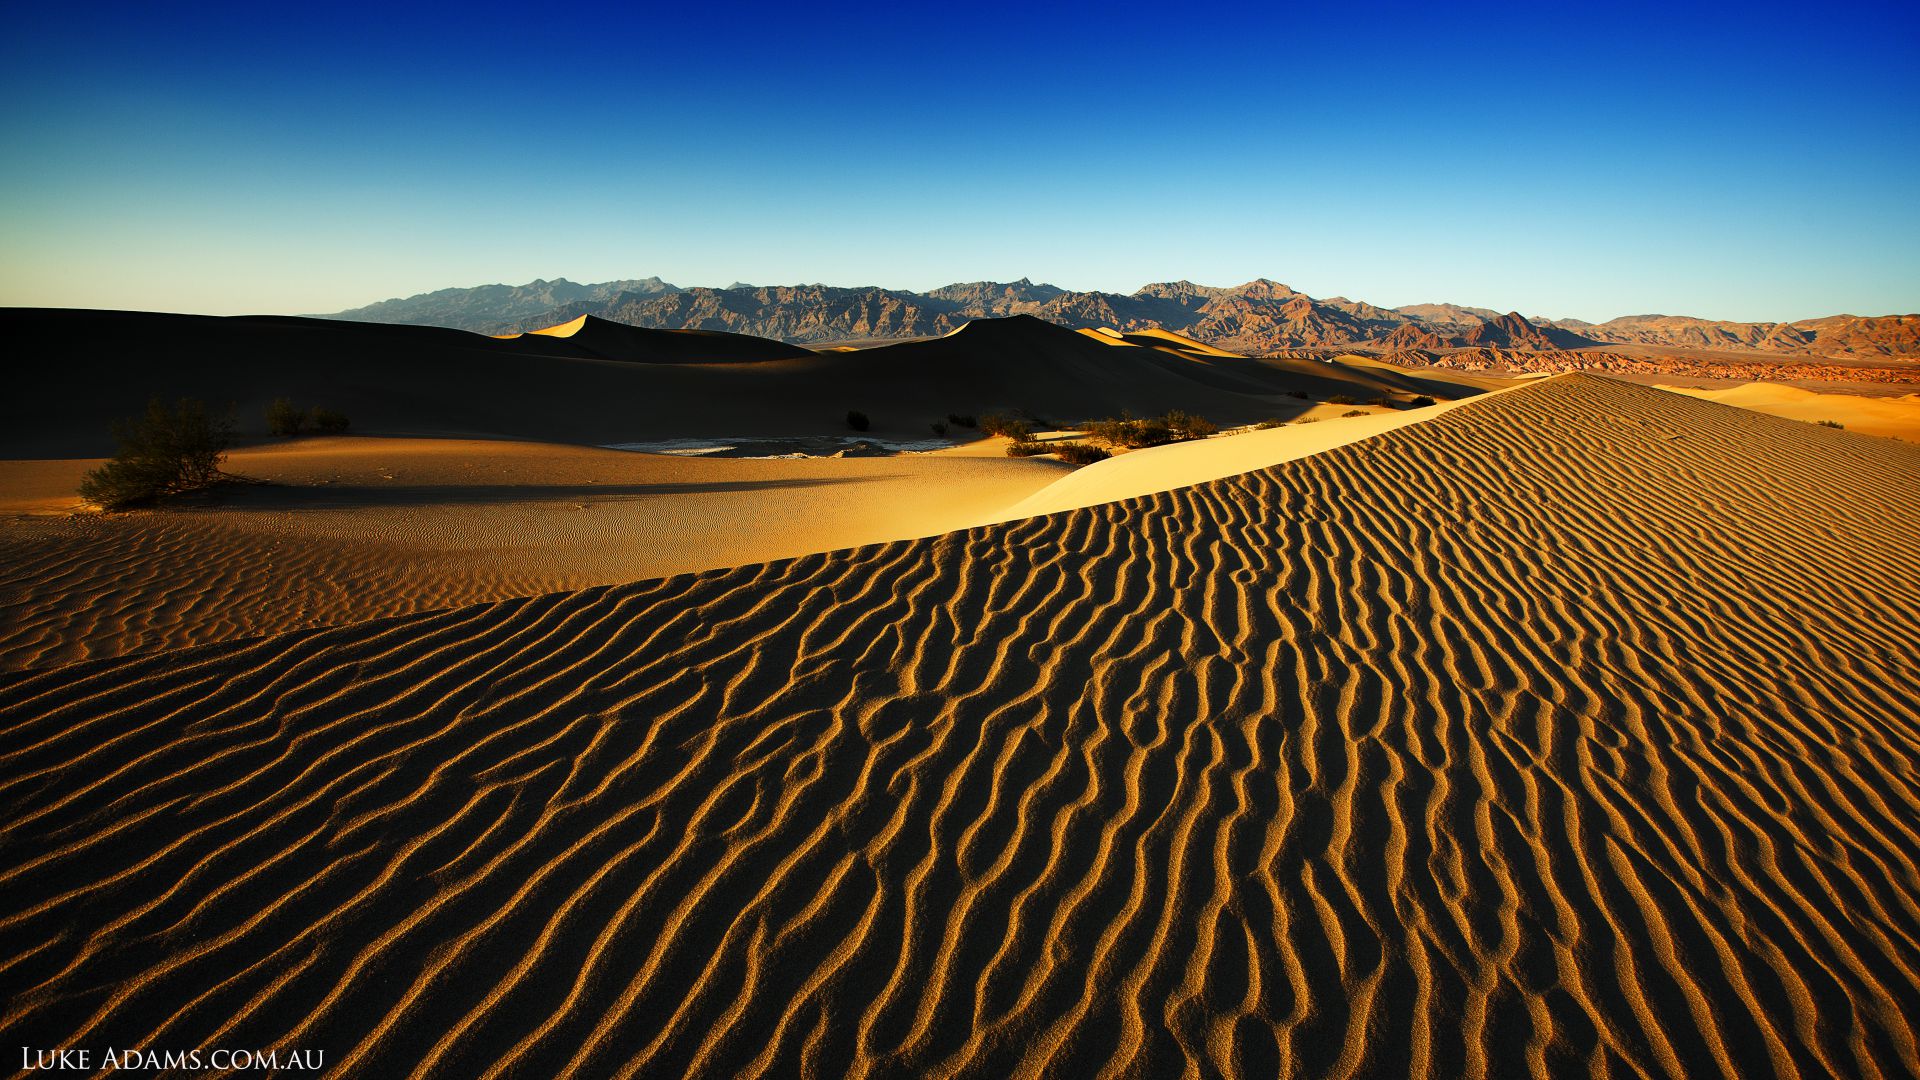 Долина Смерти, 4k, 5k, 8k, США, пустыни, дюны, песок, Death Valley, 4k, 5k wallpaper, 8k, USA, Desert, Dunes, sand (horizontal)